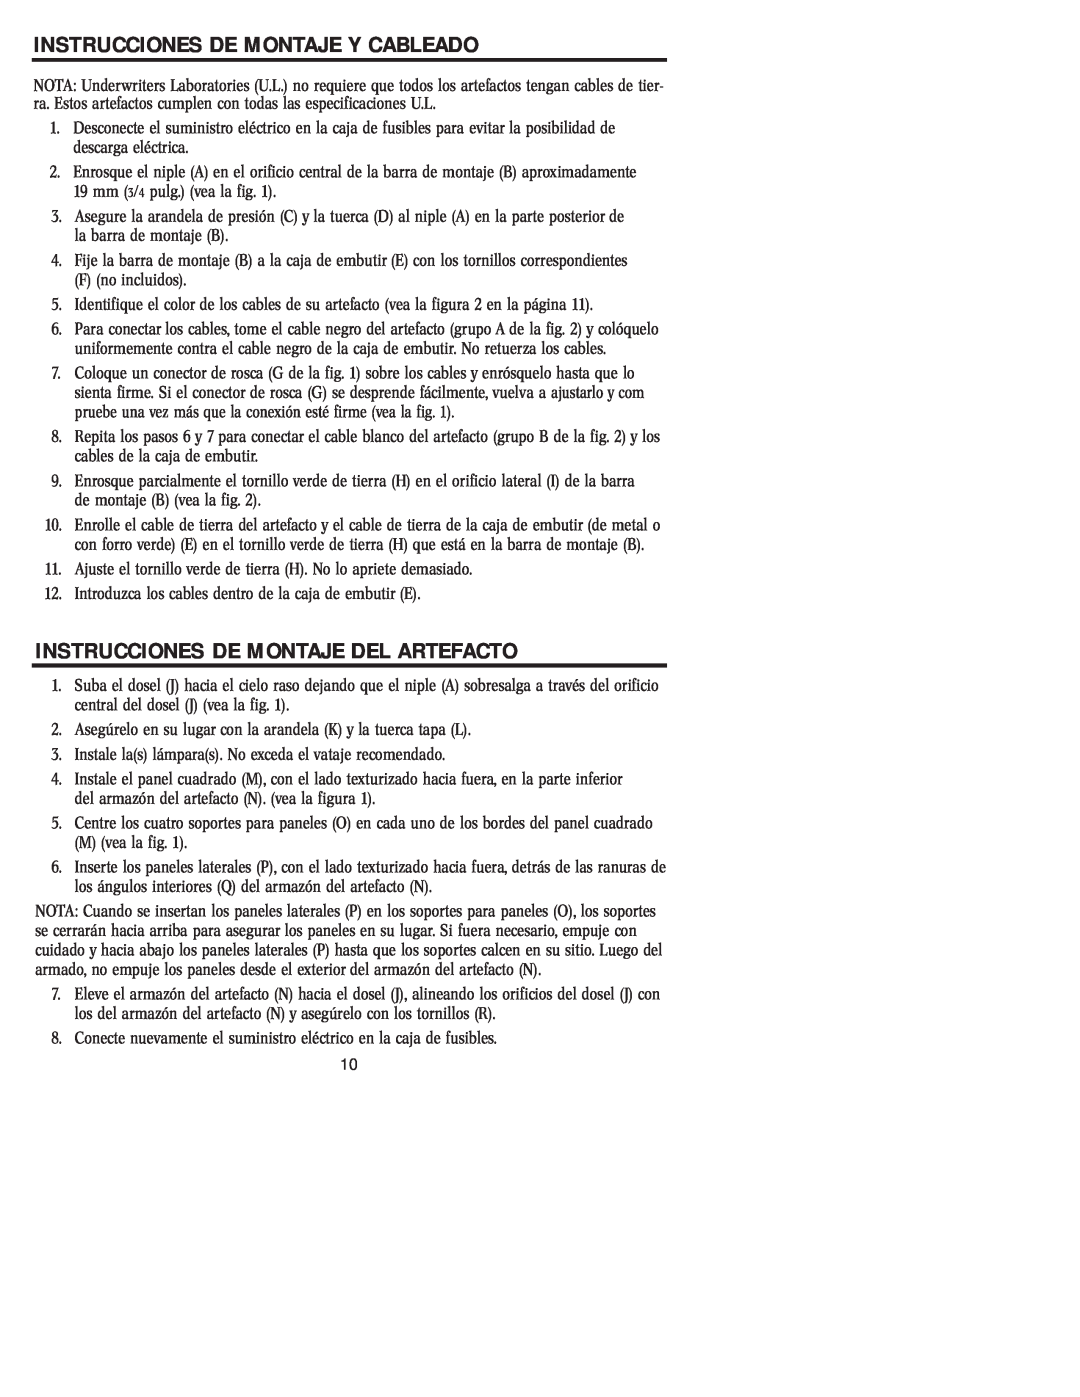 Westinghouse W-004 owner manual Instrucciones De Montaje Y Cableado, Instrucciones De Montaje Del Artefacto 